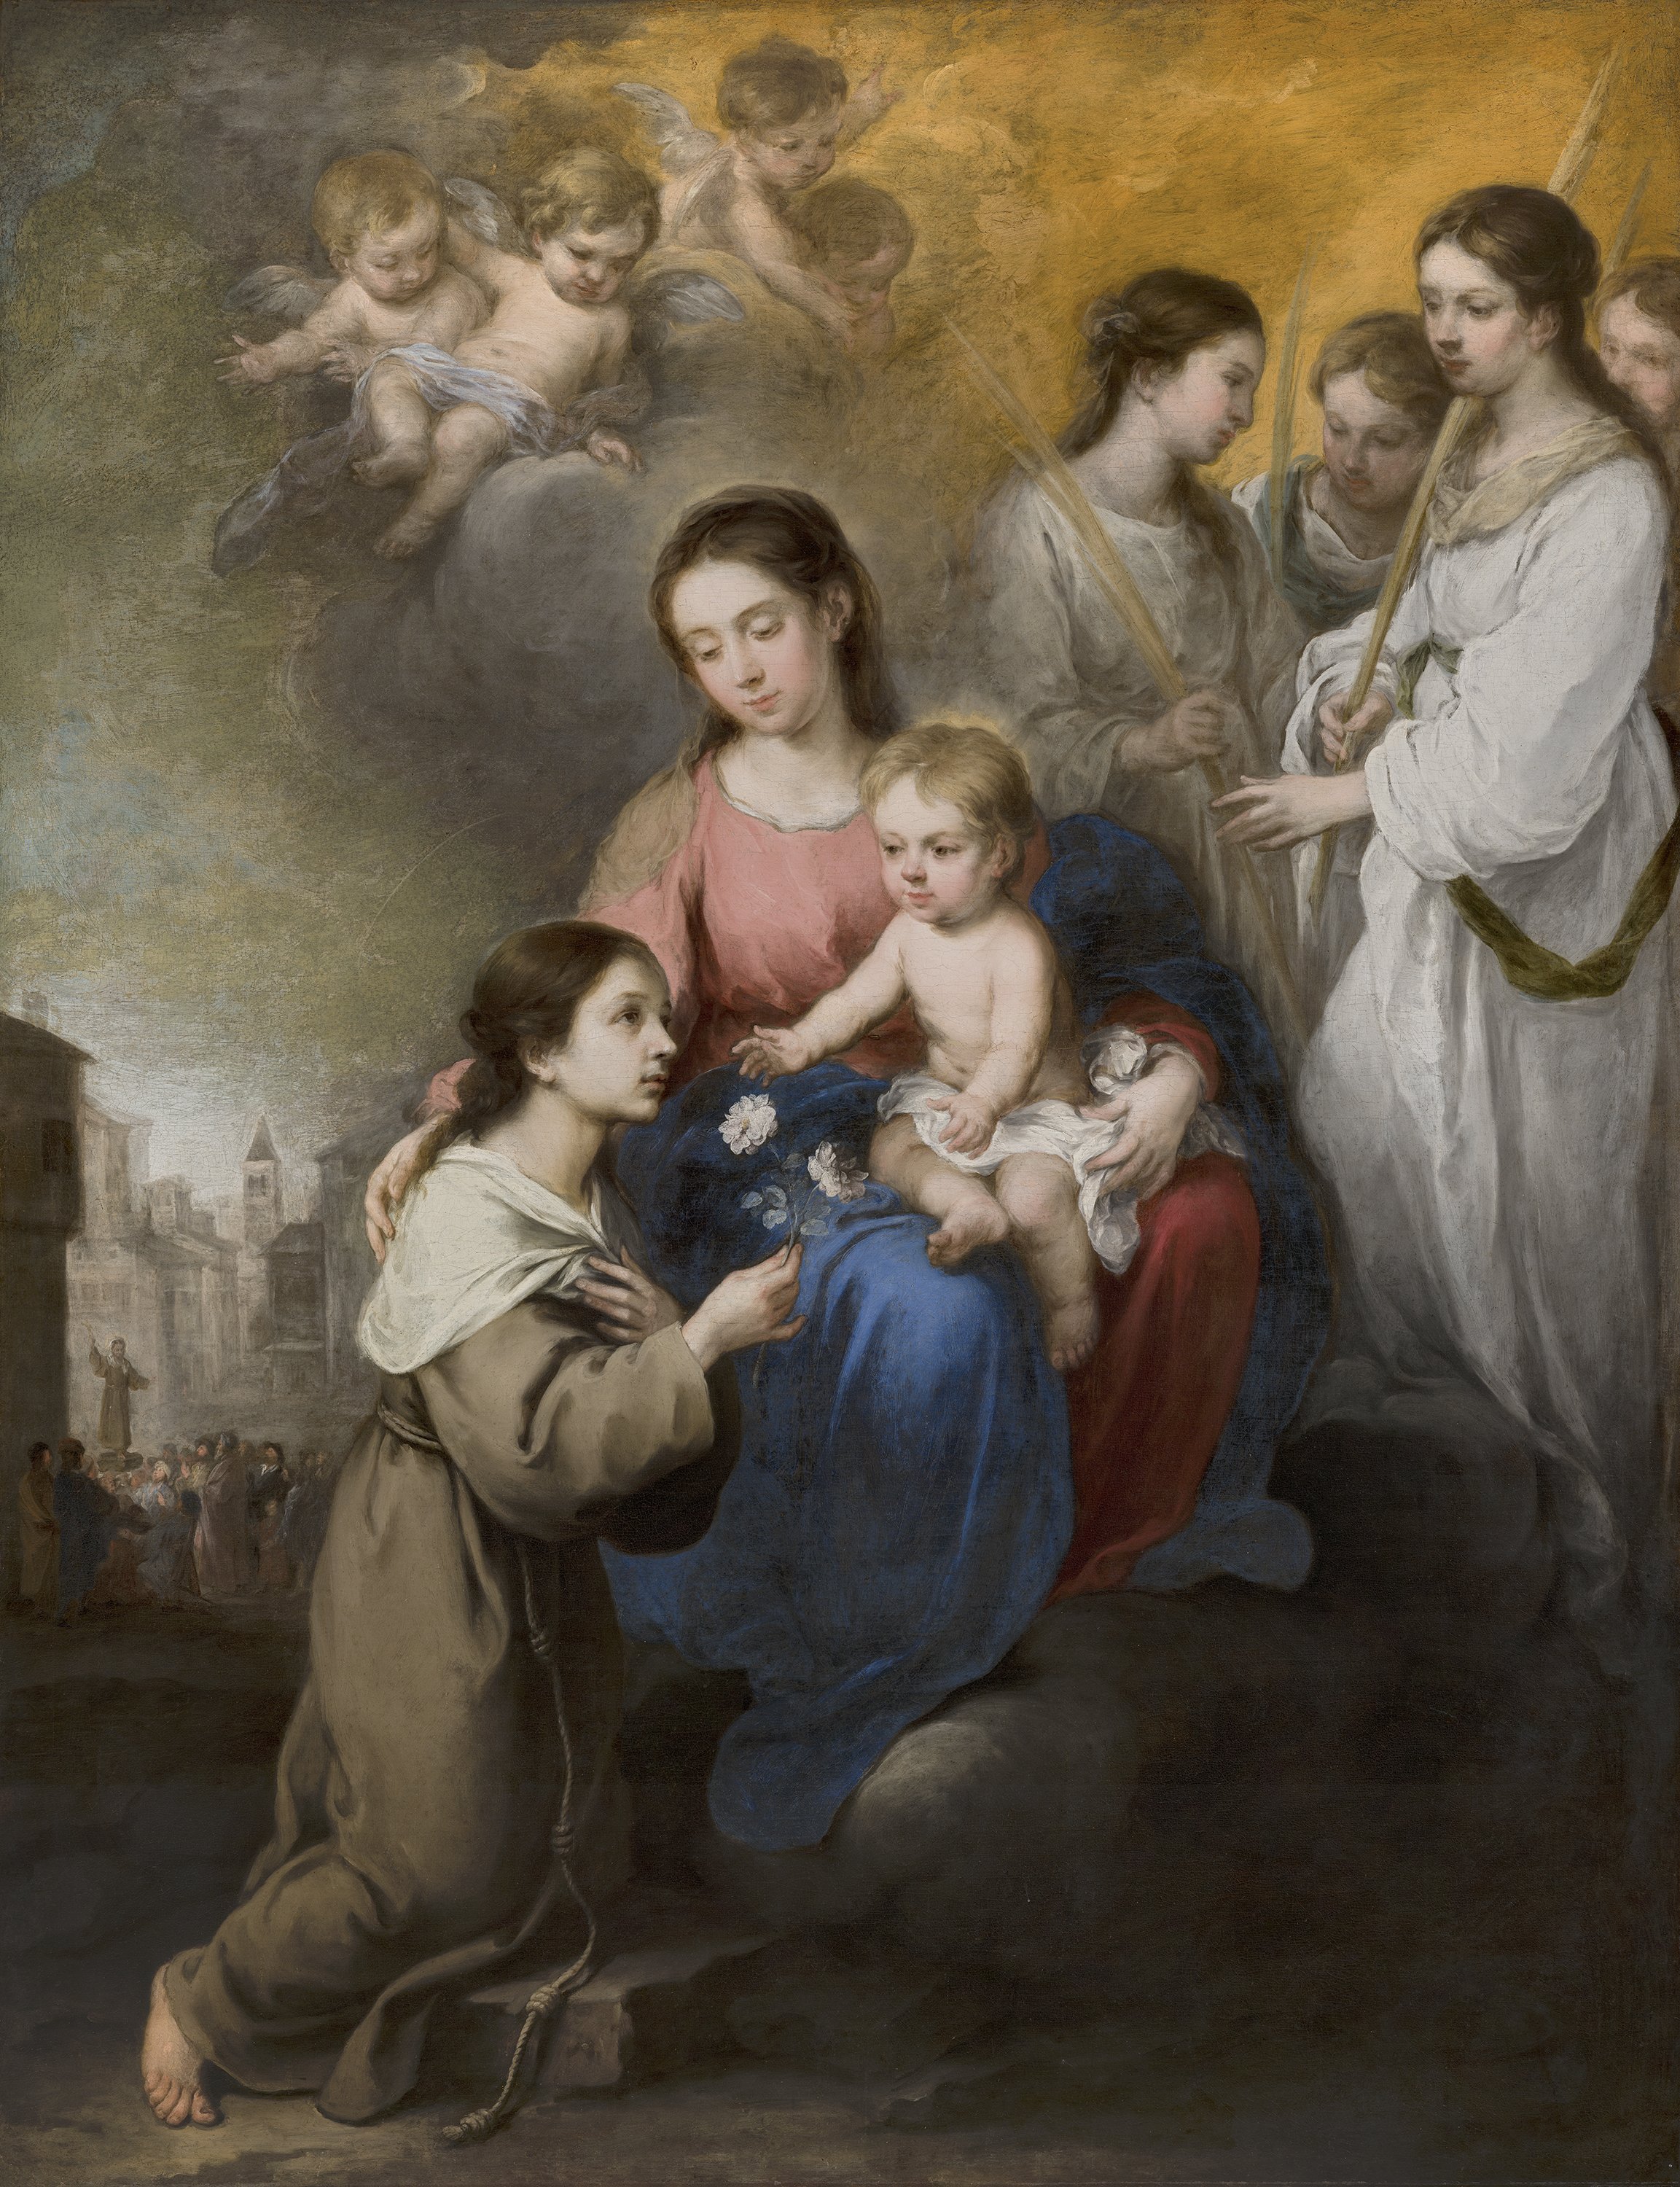 La Virgen y el Niño con santa Rosa de Viterbo Murillo, Bartolomé Esteban. Museo Nacional Thyssen-Bornemisza